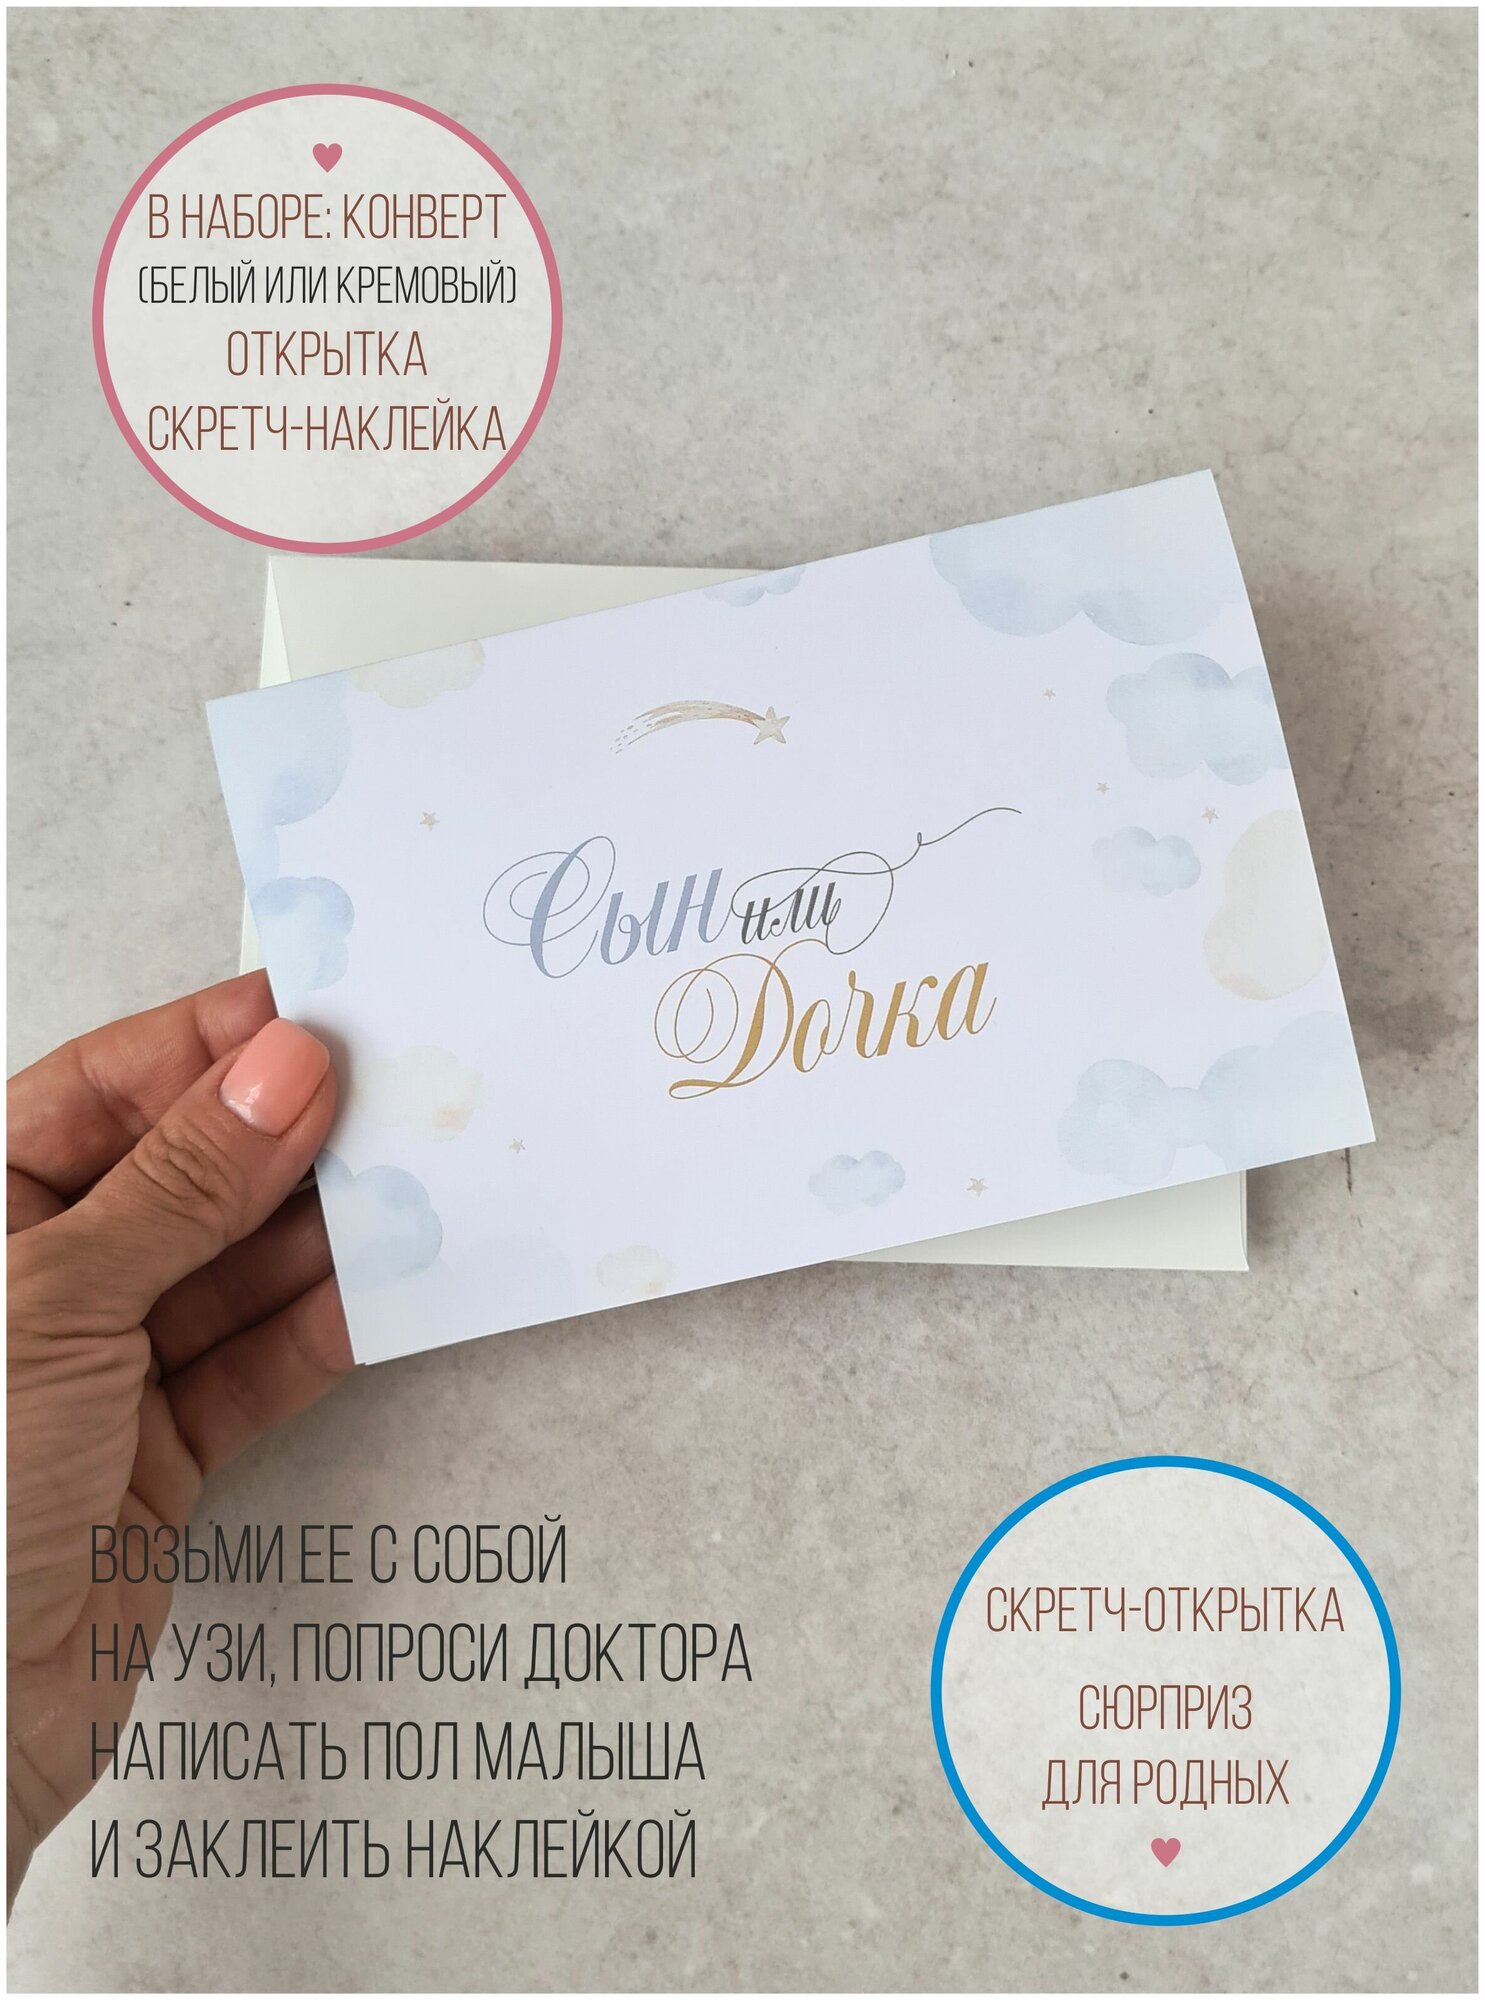 Скретч открытка гендерная с конвертом для УЗИ